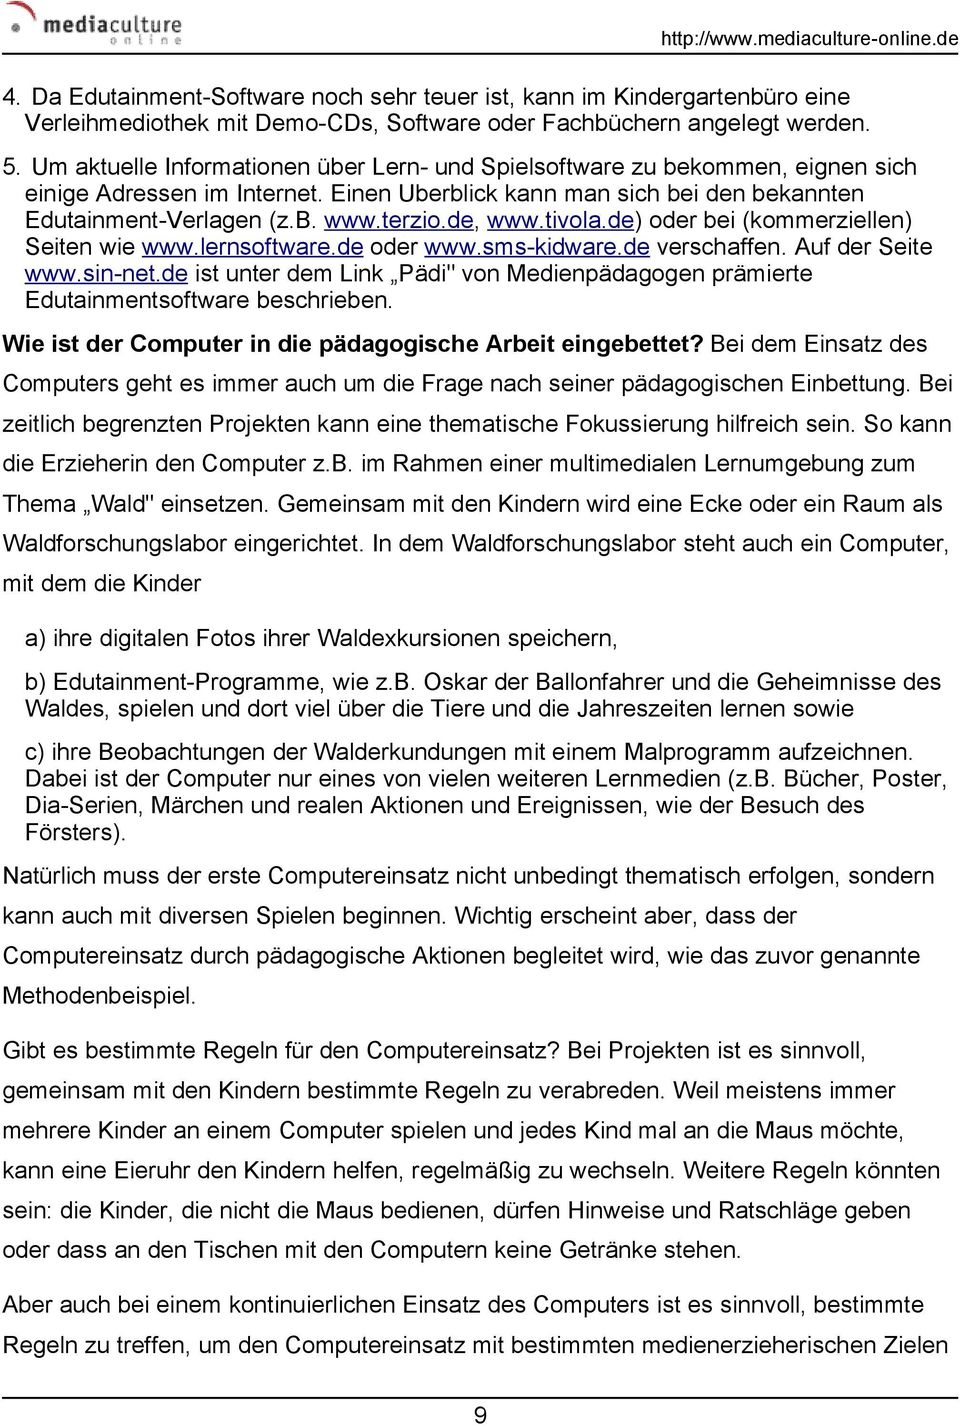 de, www.tivola.de) oder bei (kommerziellen) Seiten wie www.lernsoftware.de oder www.sms-kidware.de verschaffen. Auf der Seite www.sin-net.